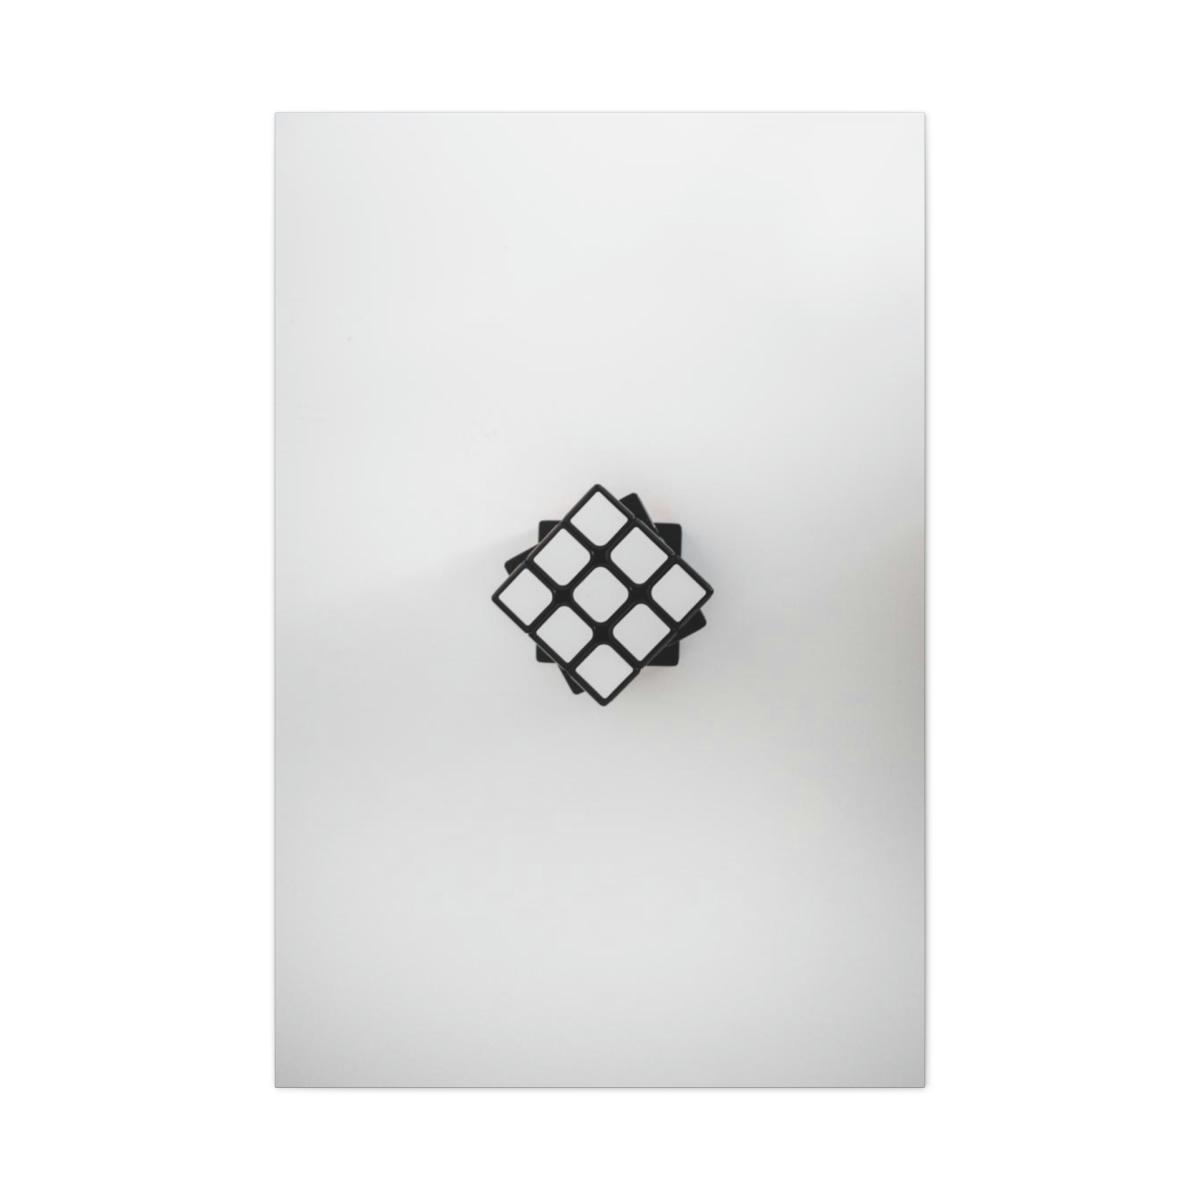 Rubik's cube art